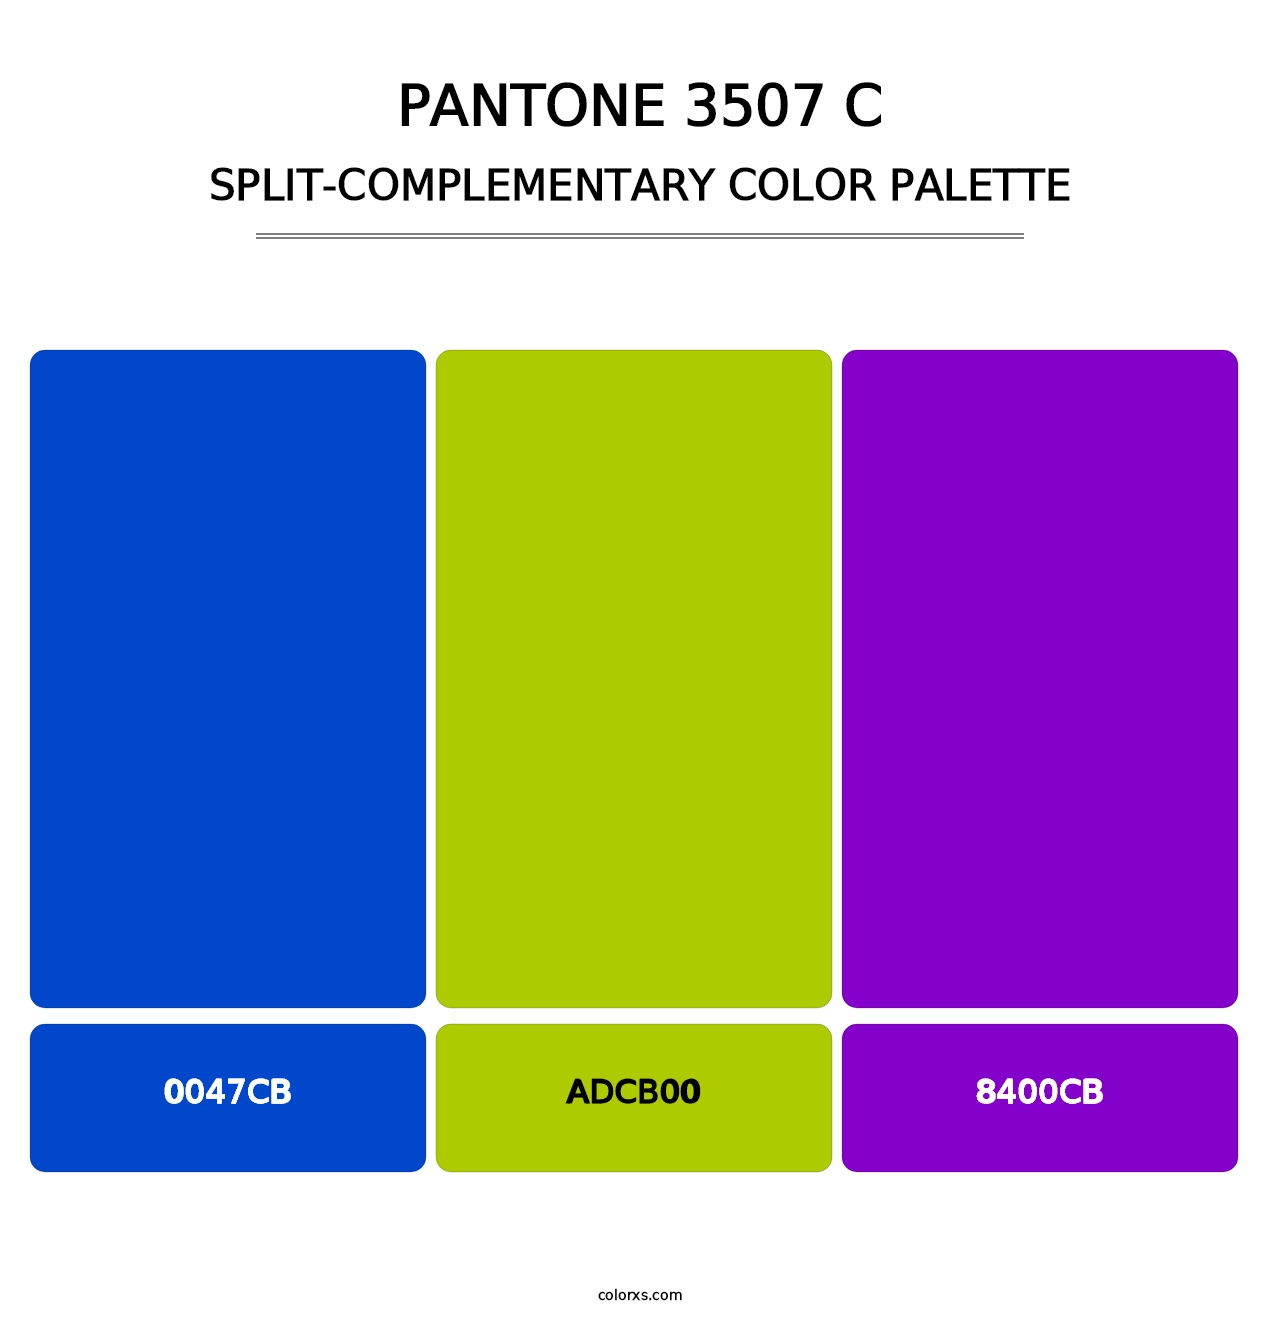 PANTONE 3507 C - Split-Complementary Color Palette